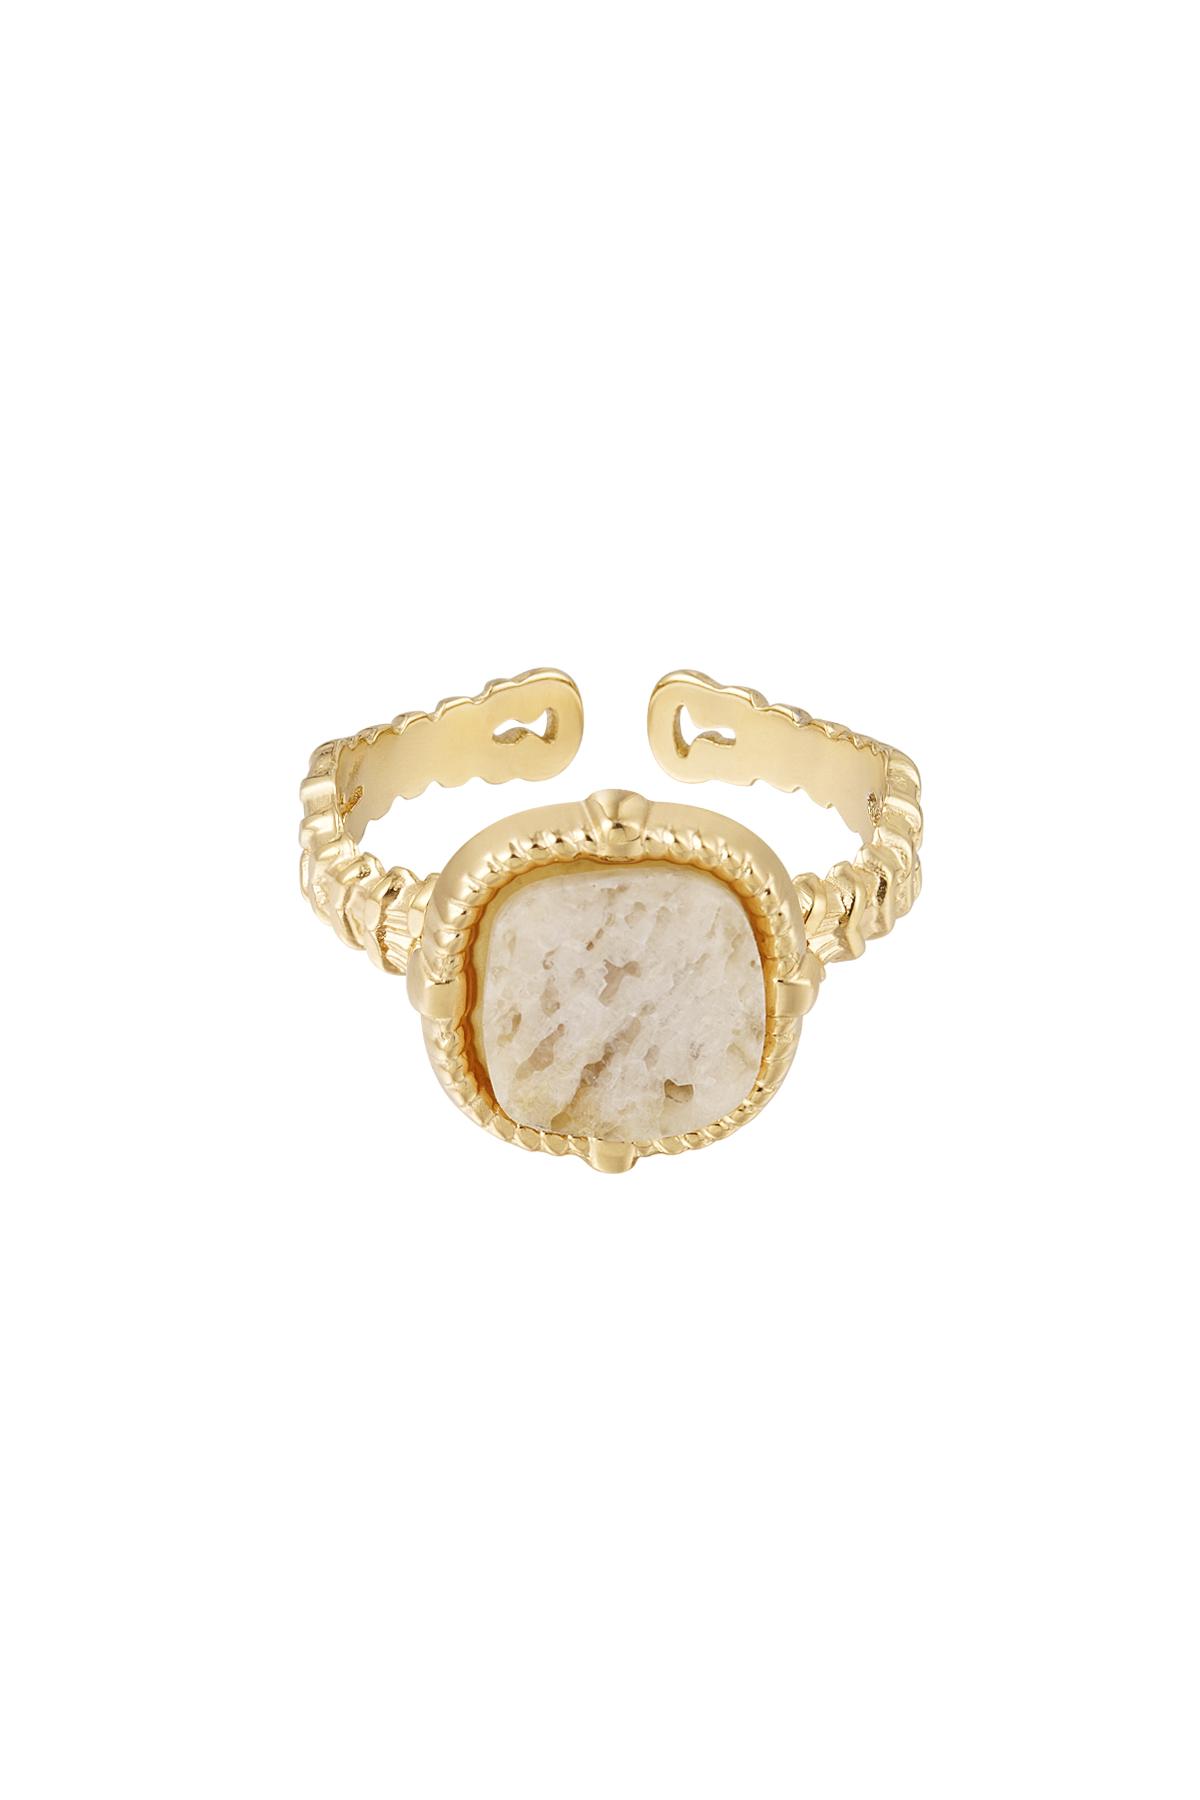 Statement-Ring elegant - beige - Natursteinkollektion Beige & Gold Edelstahl One size h5 